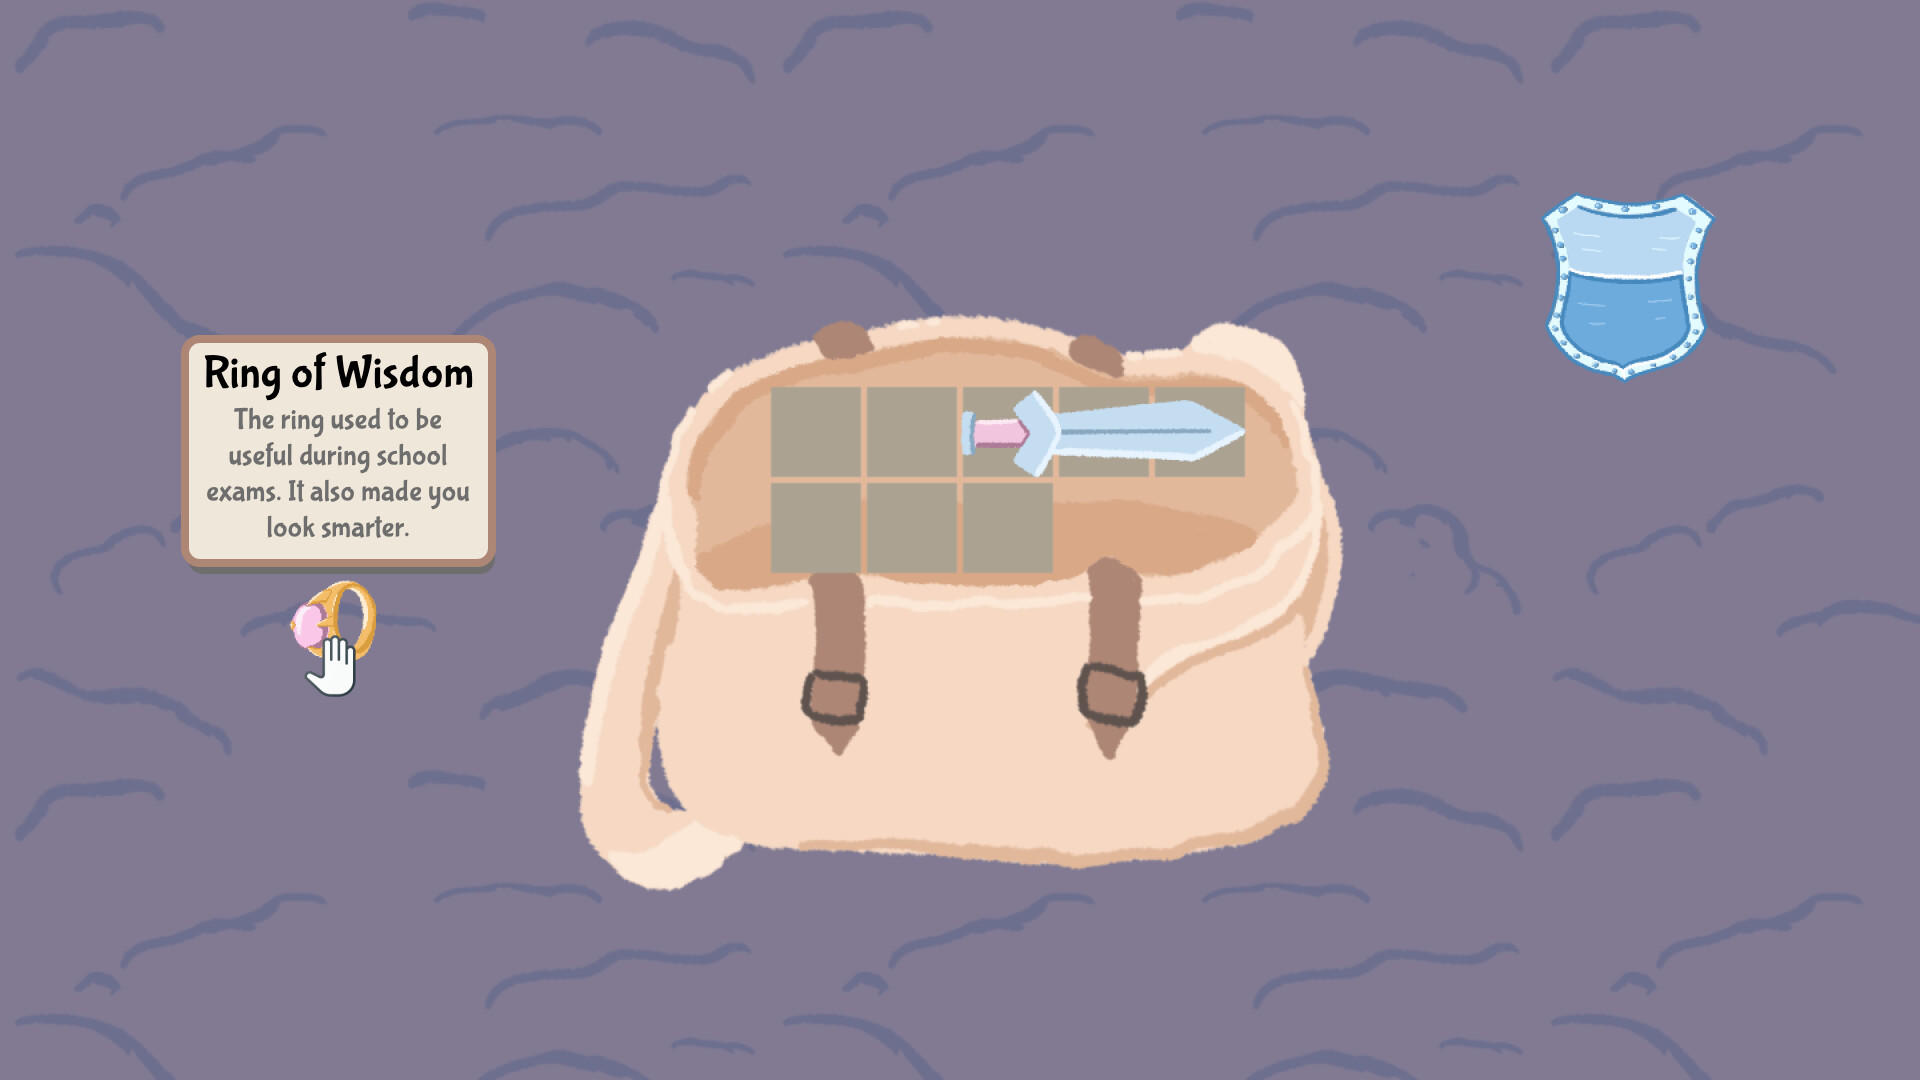 Tidy Backpack screenshot game